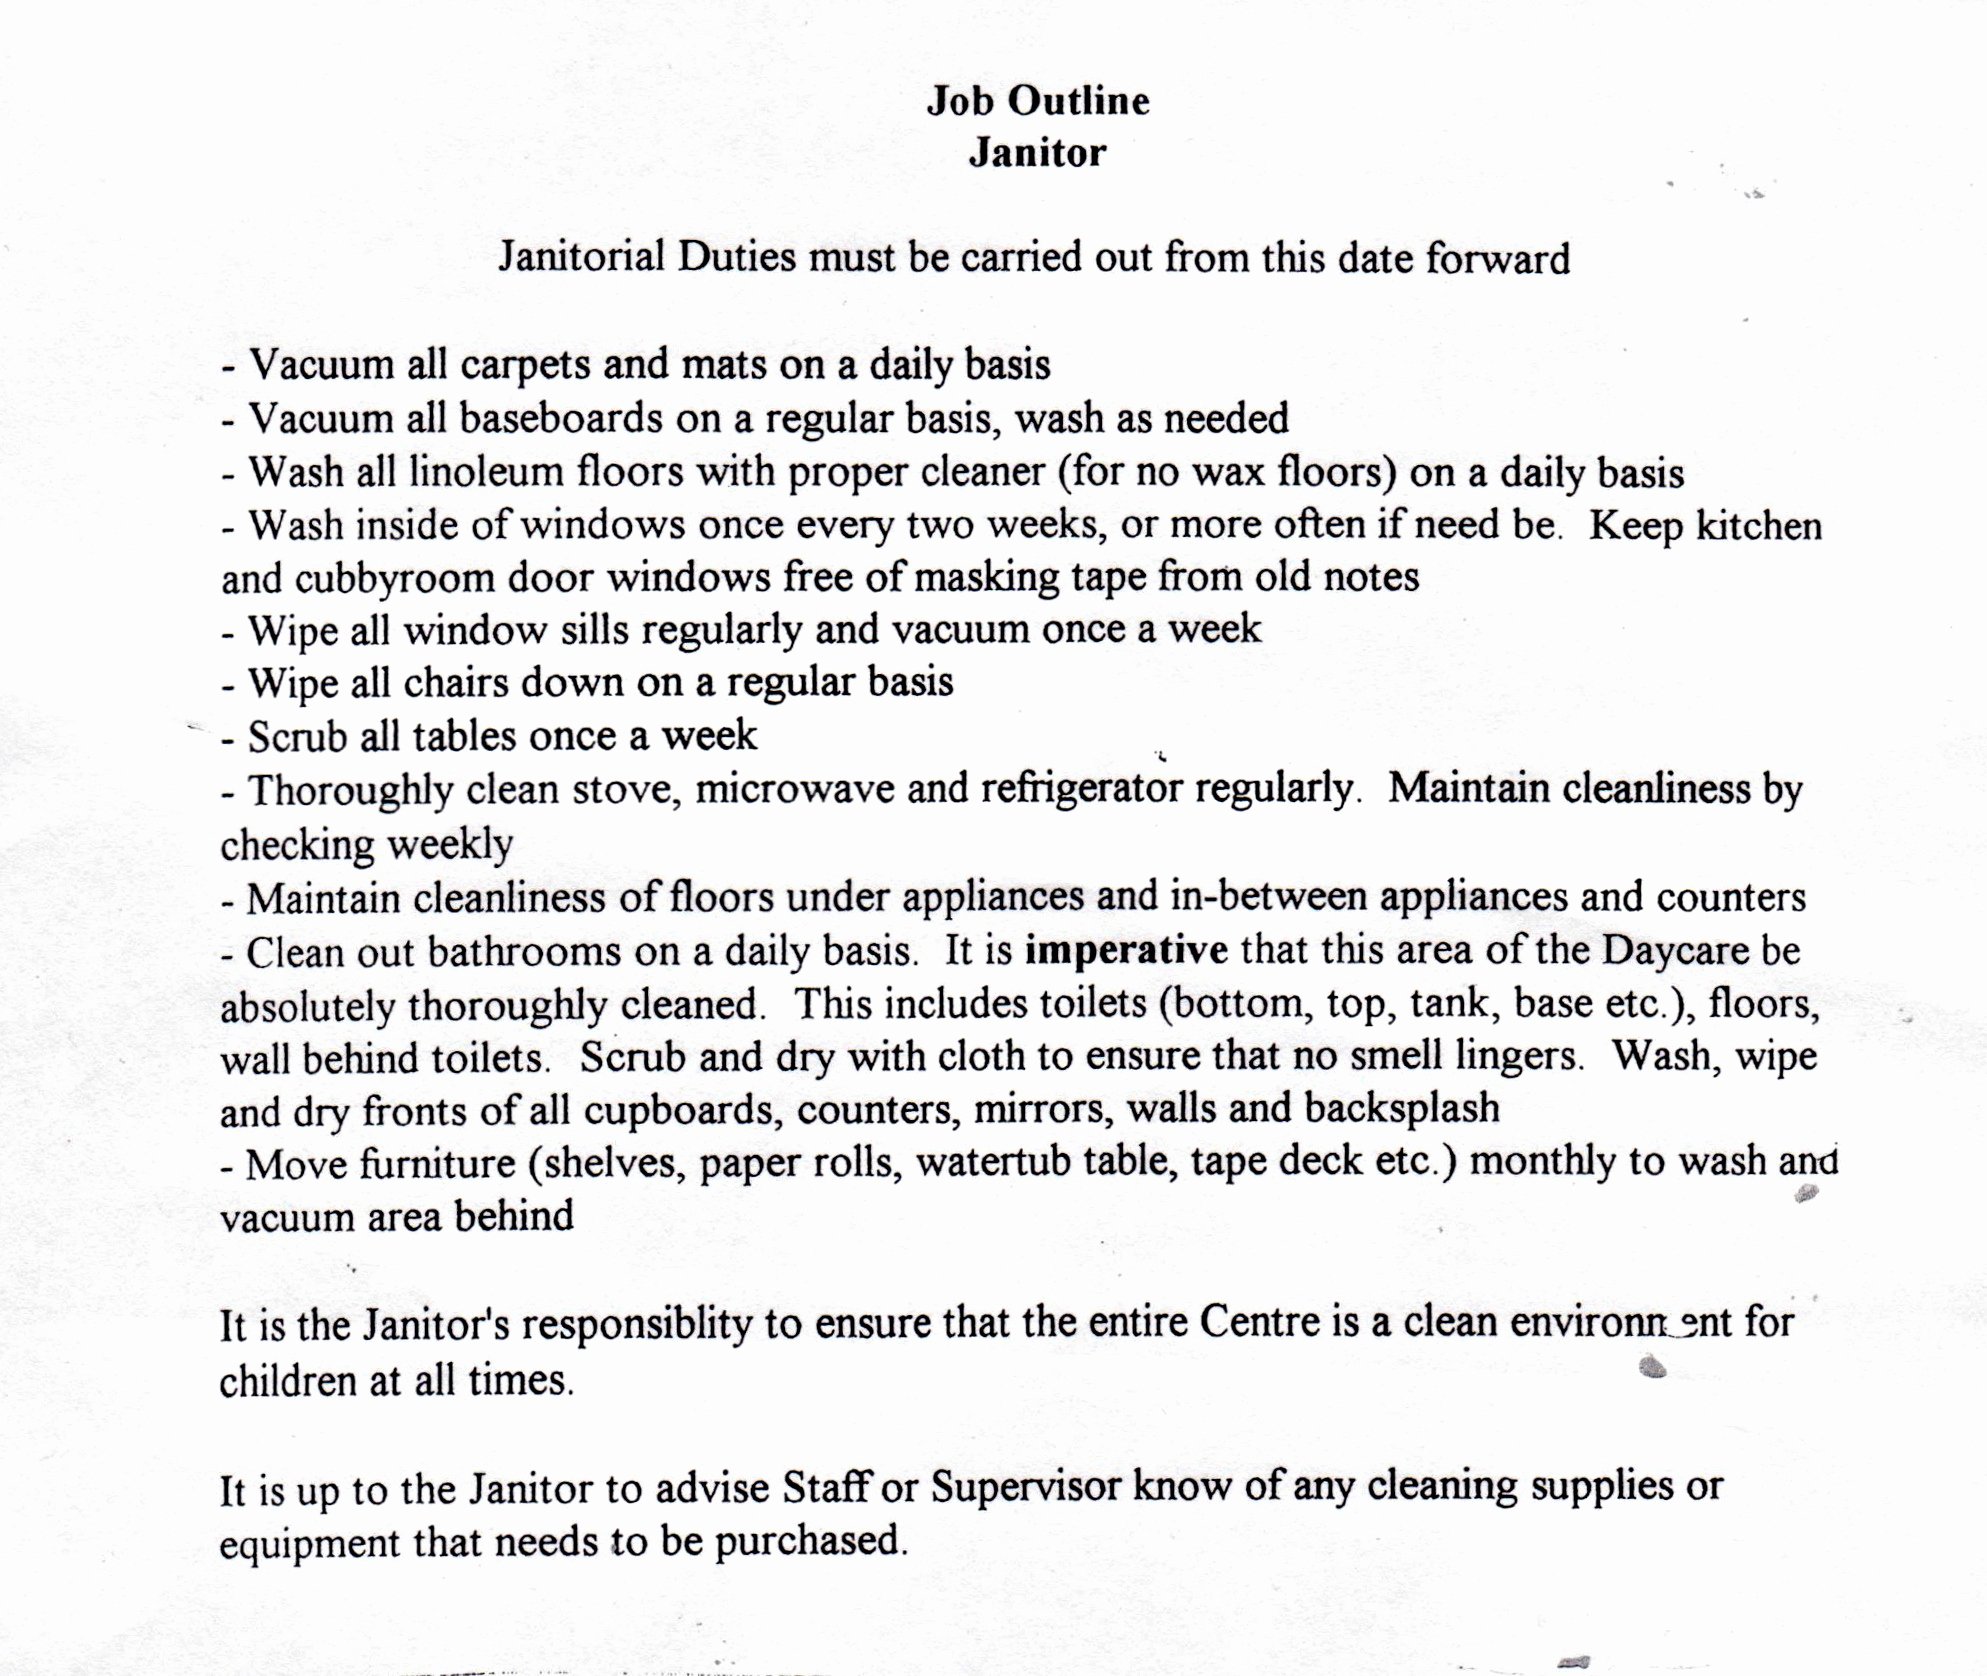 Resume Job Description for Janitor Samplebusinessresume